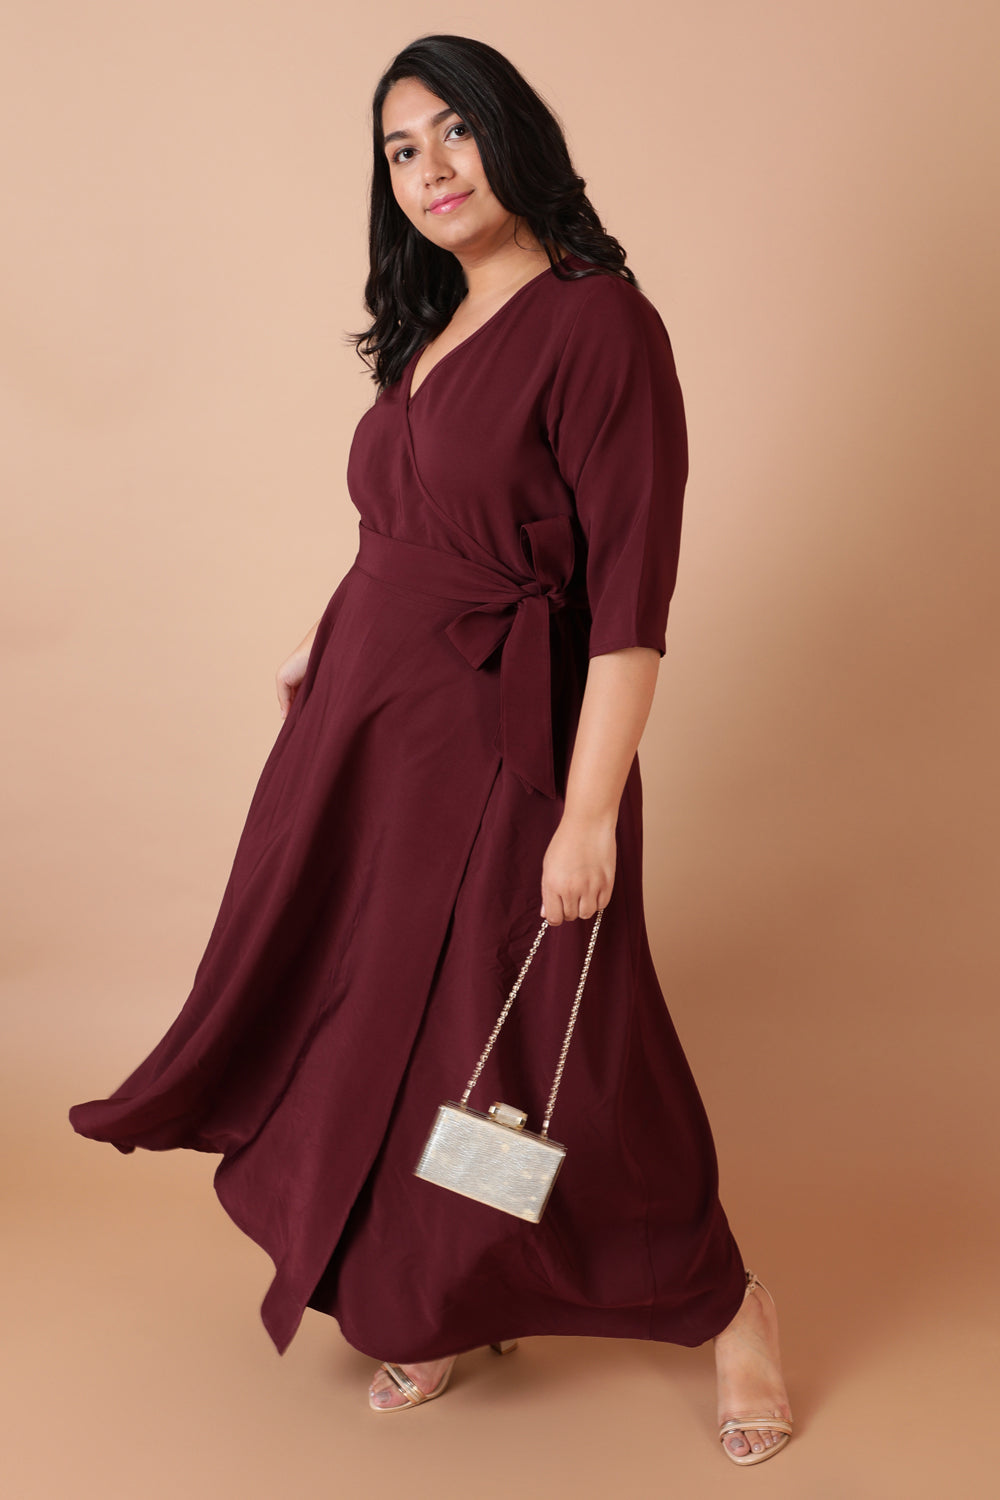 Buy Women's Wrap Dress - Satin Wrap Dress & More Online